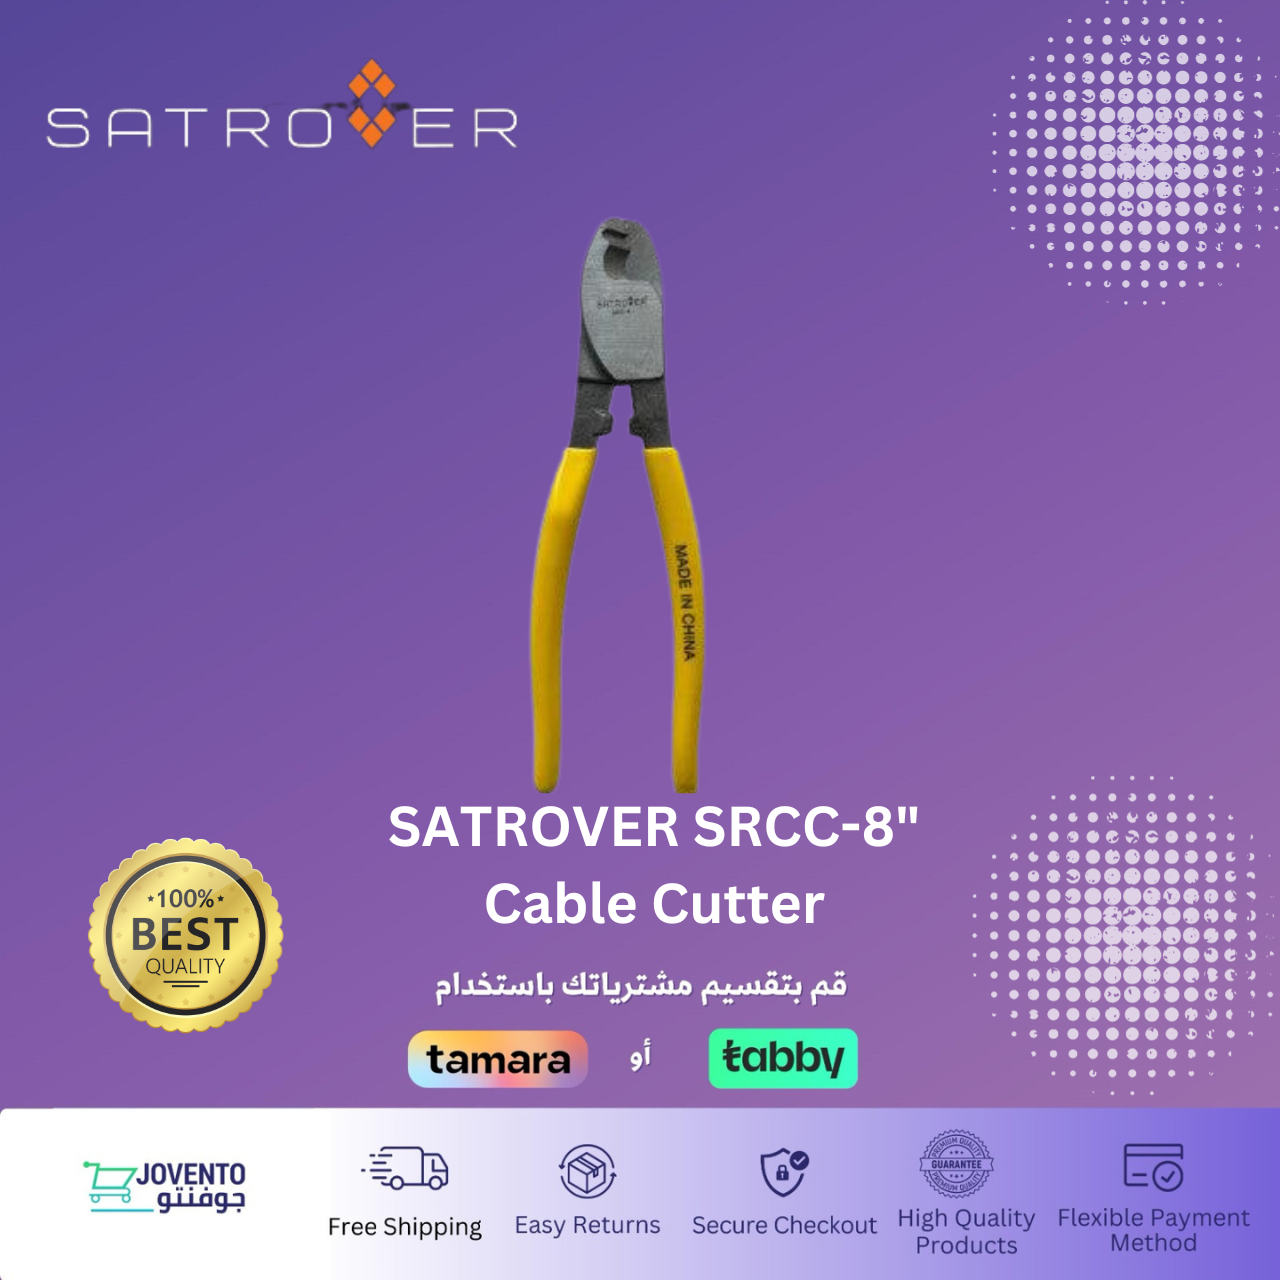 SATROVER SRCC-8" Cable Cutter